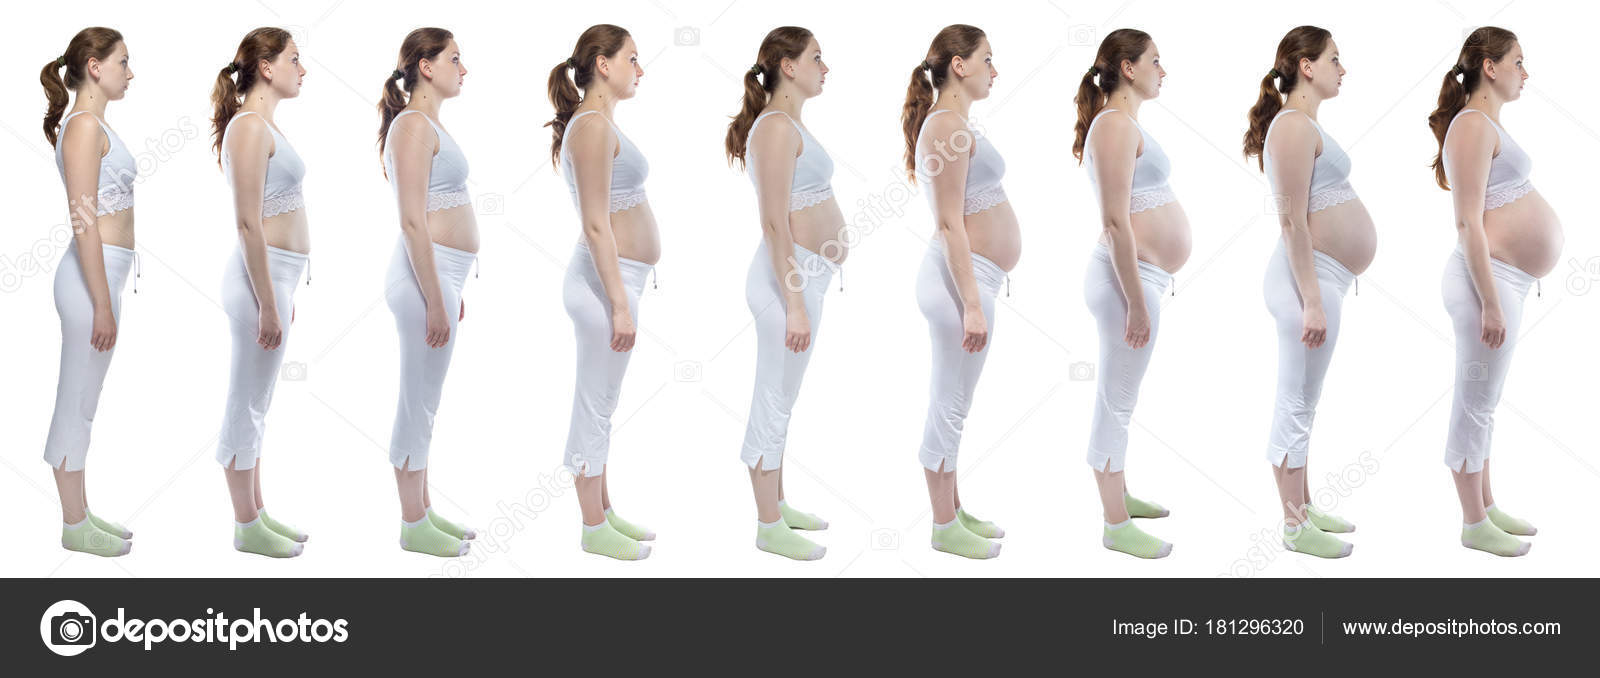 изменения в груди при беременности на раннем сроке фото 31